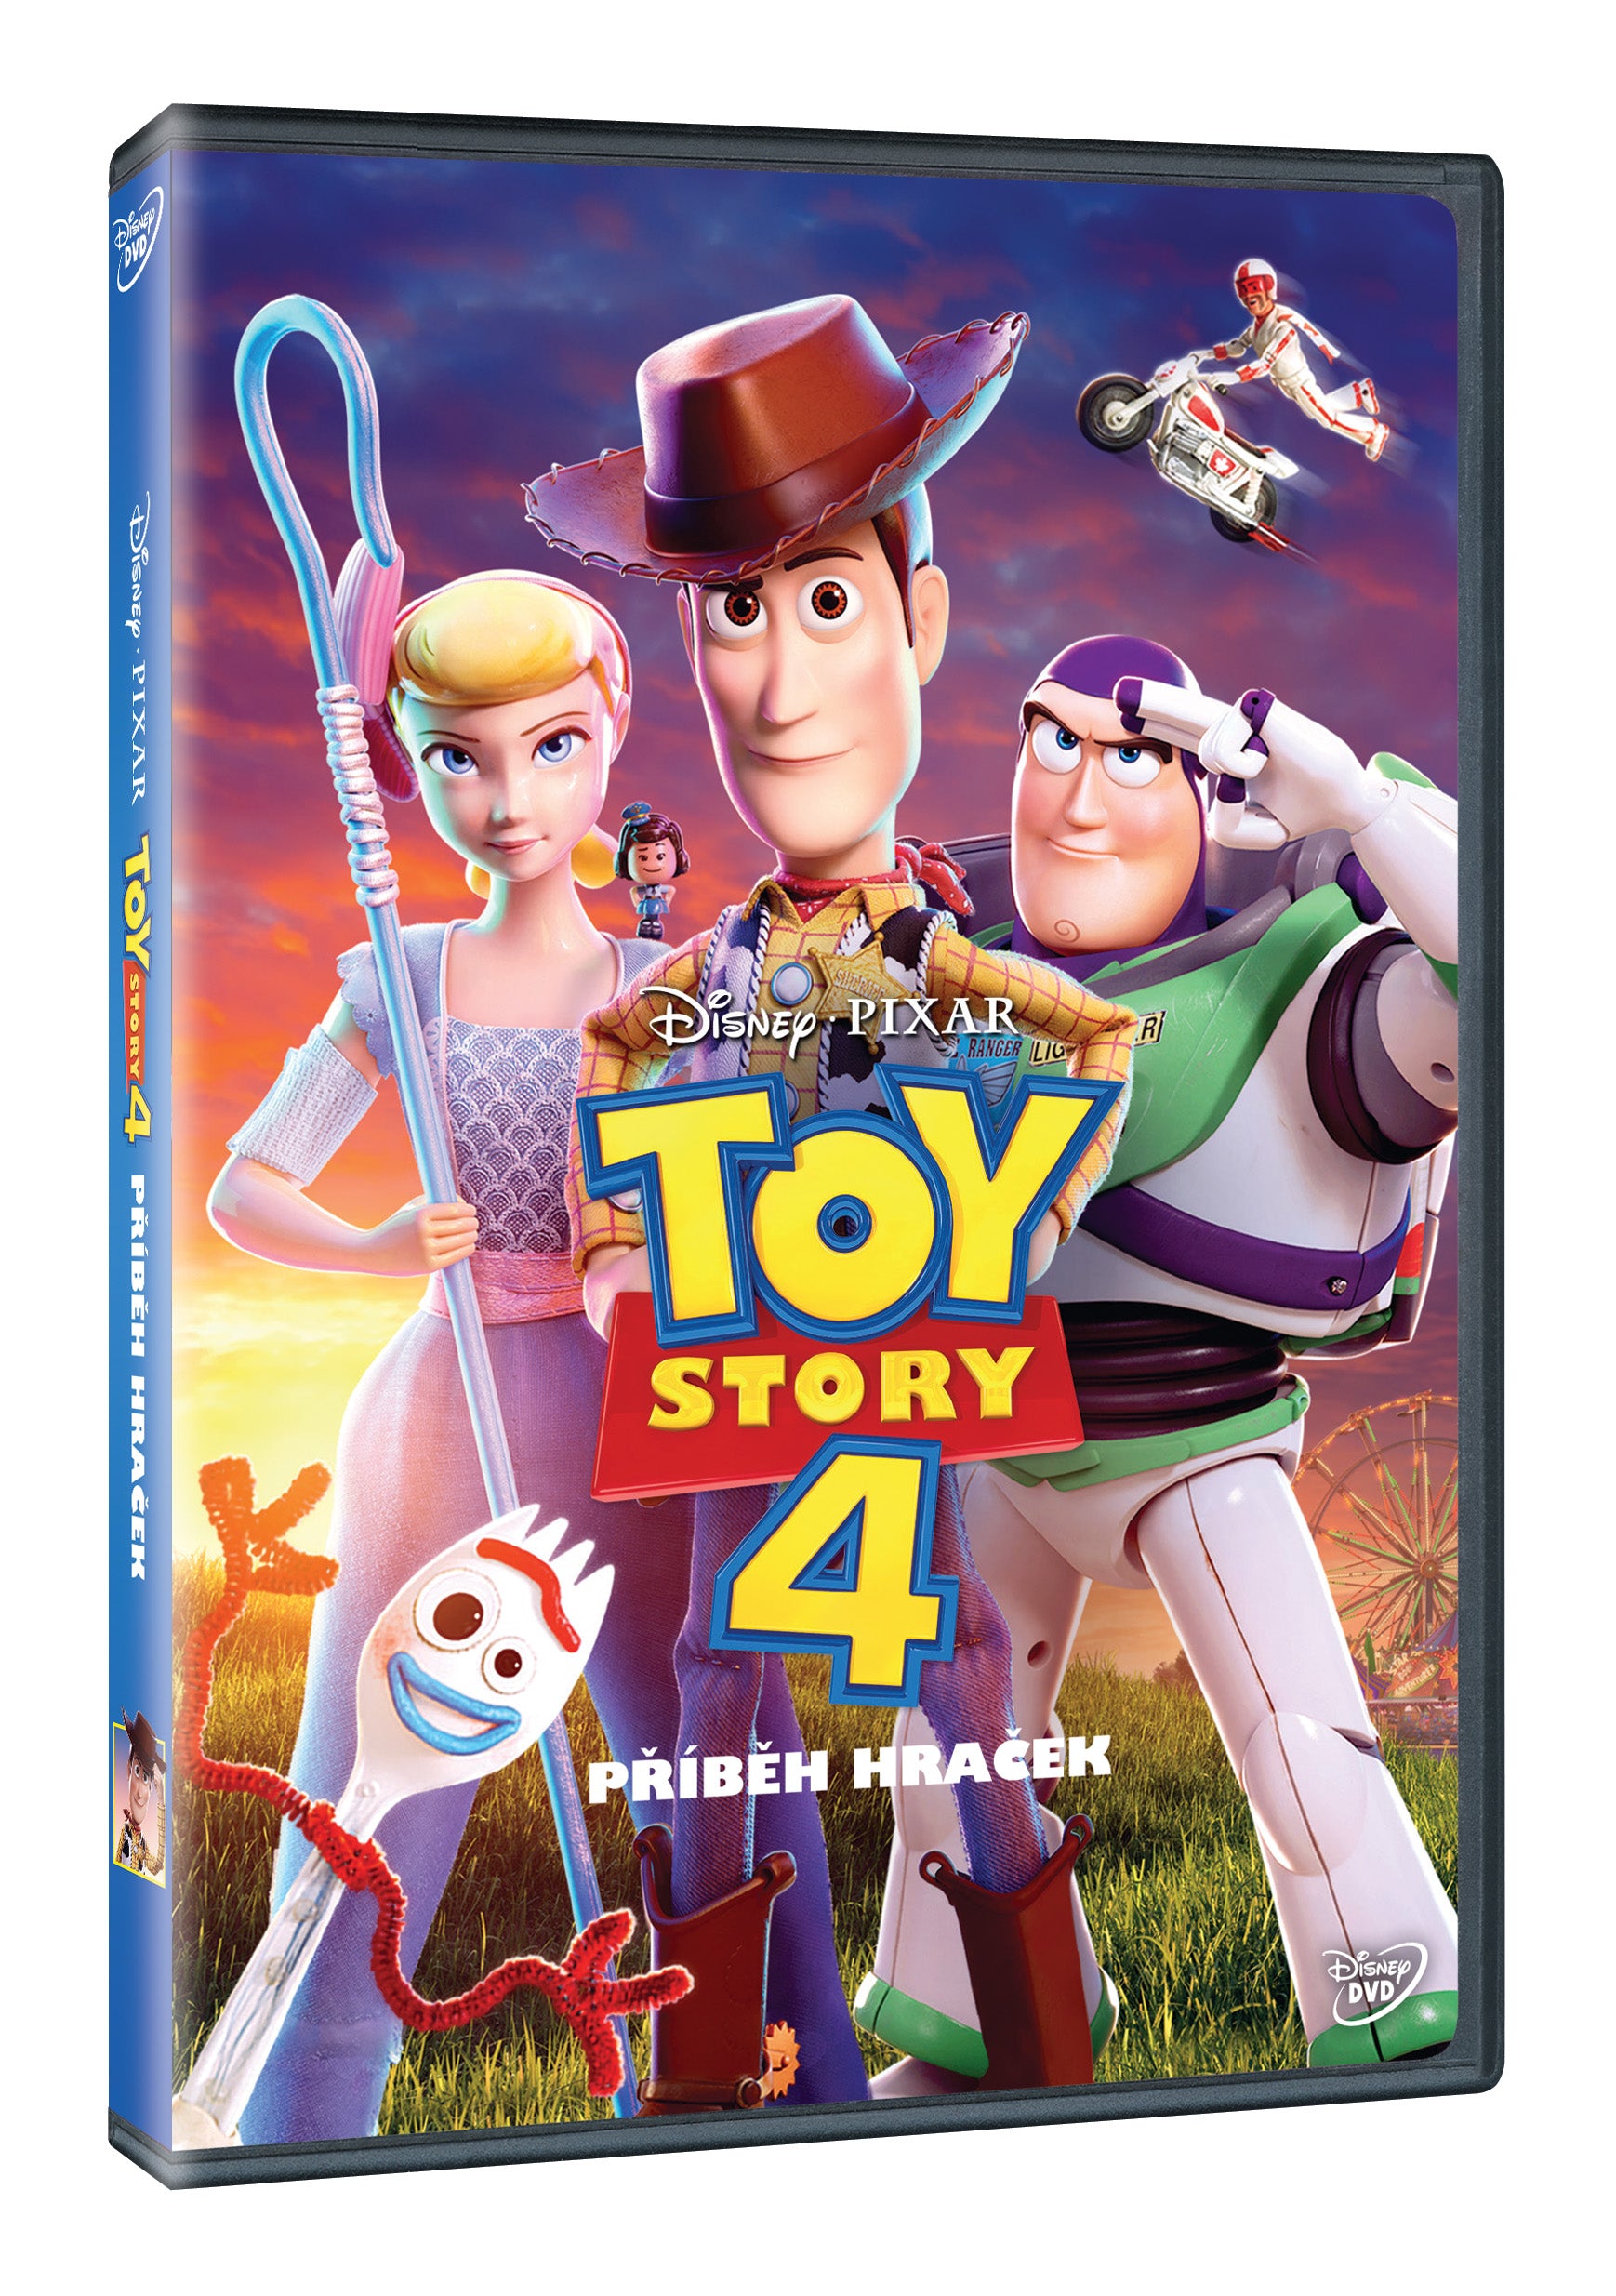 Toy Story 4: Pribeh hracek DVD / Toy Story 4